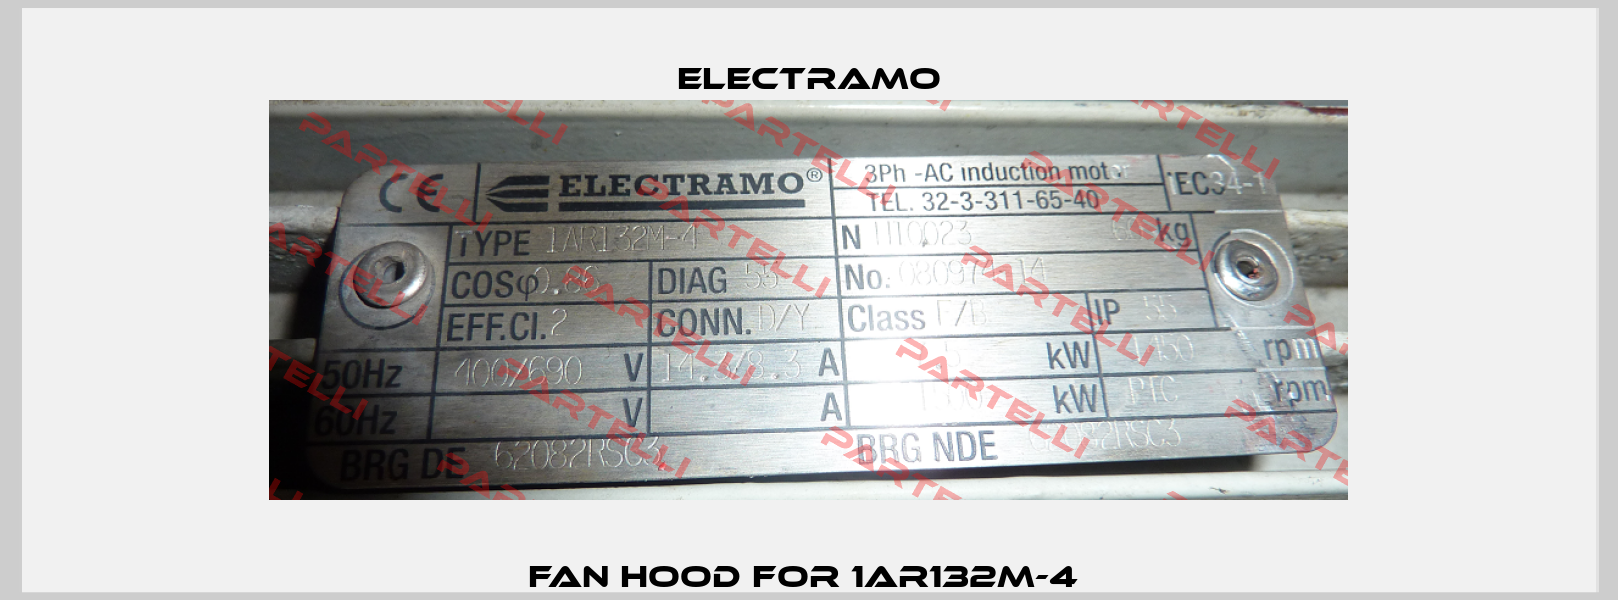 Fan hood for 1AR132M-4  Electramo